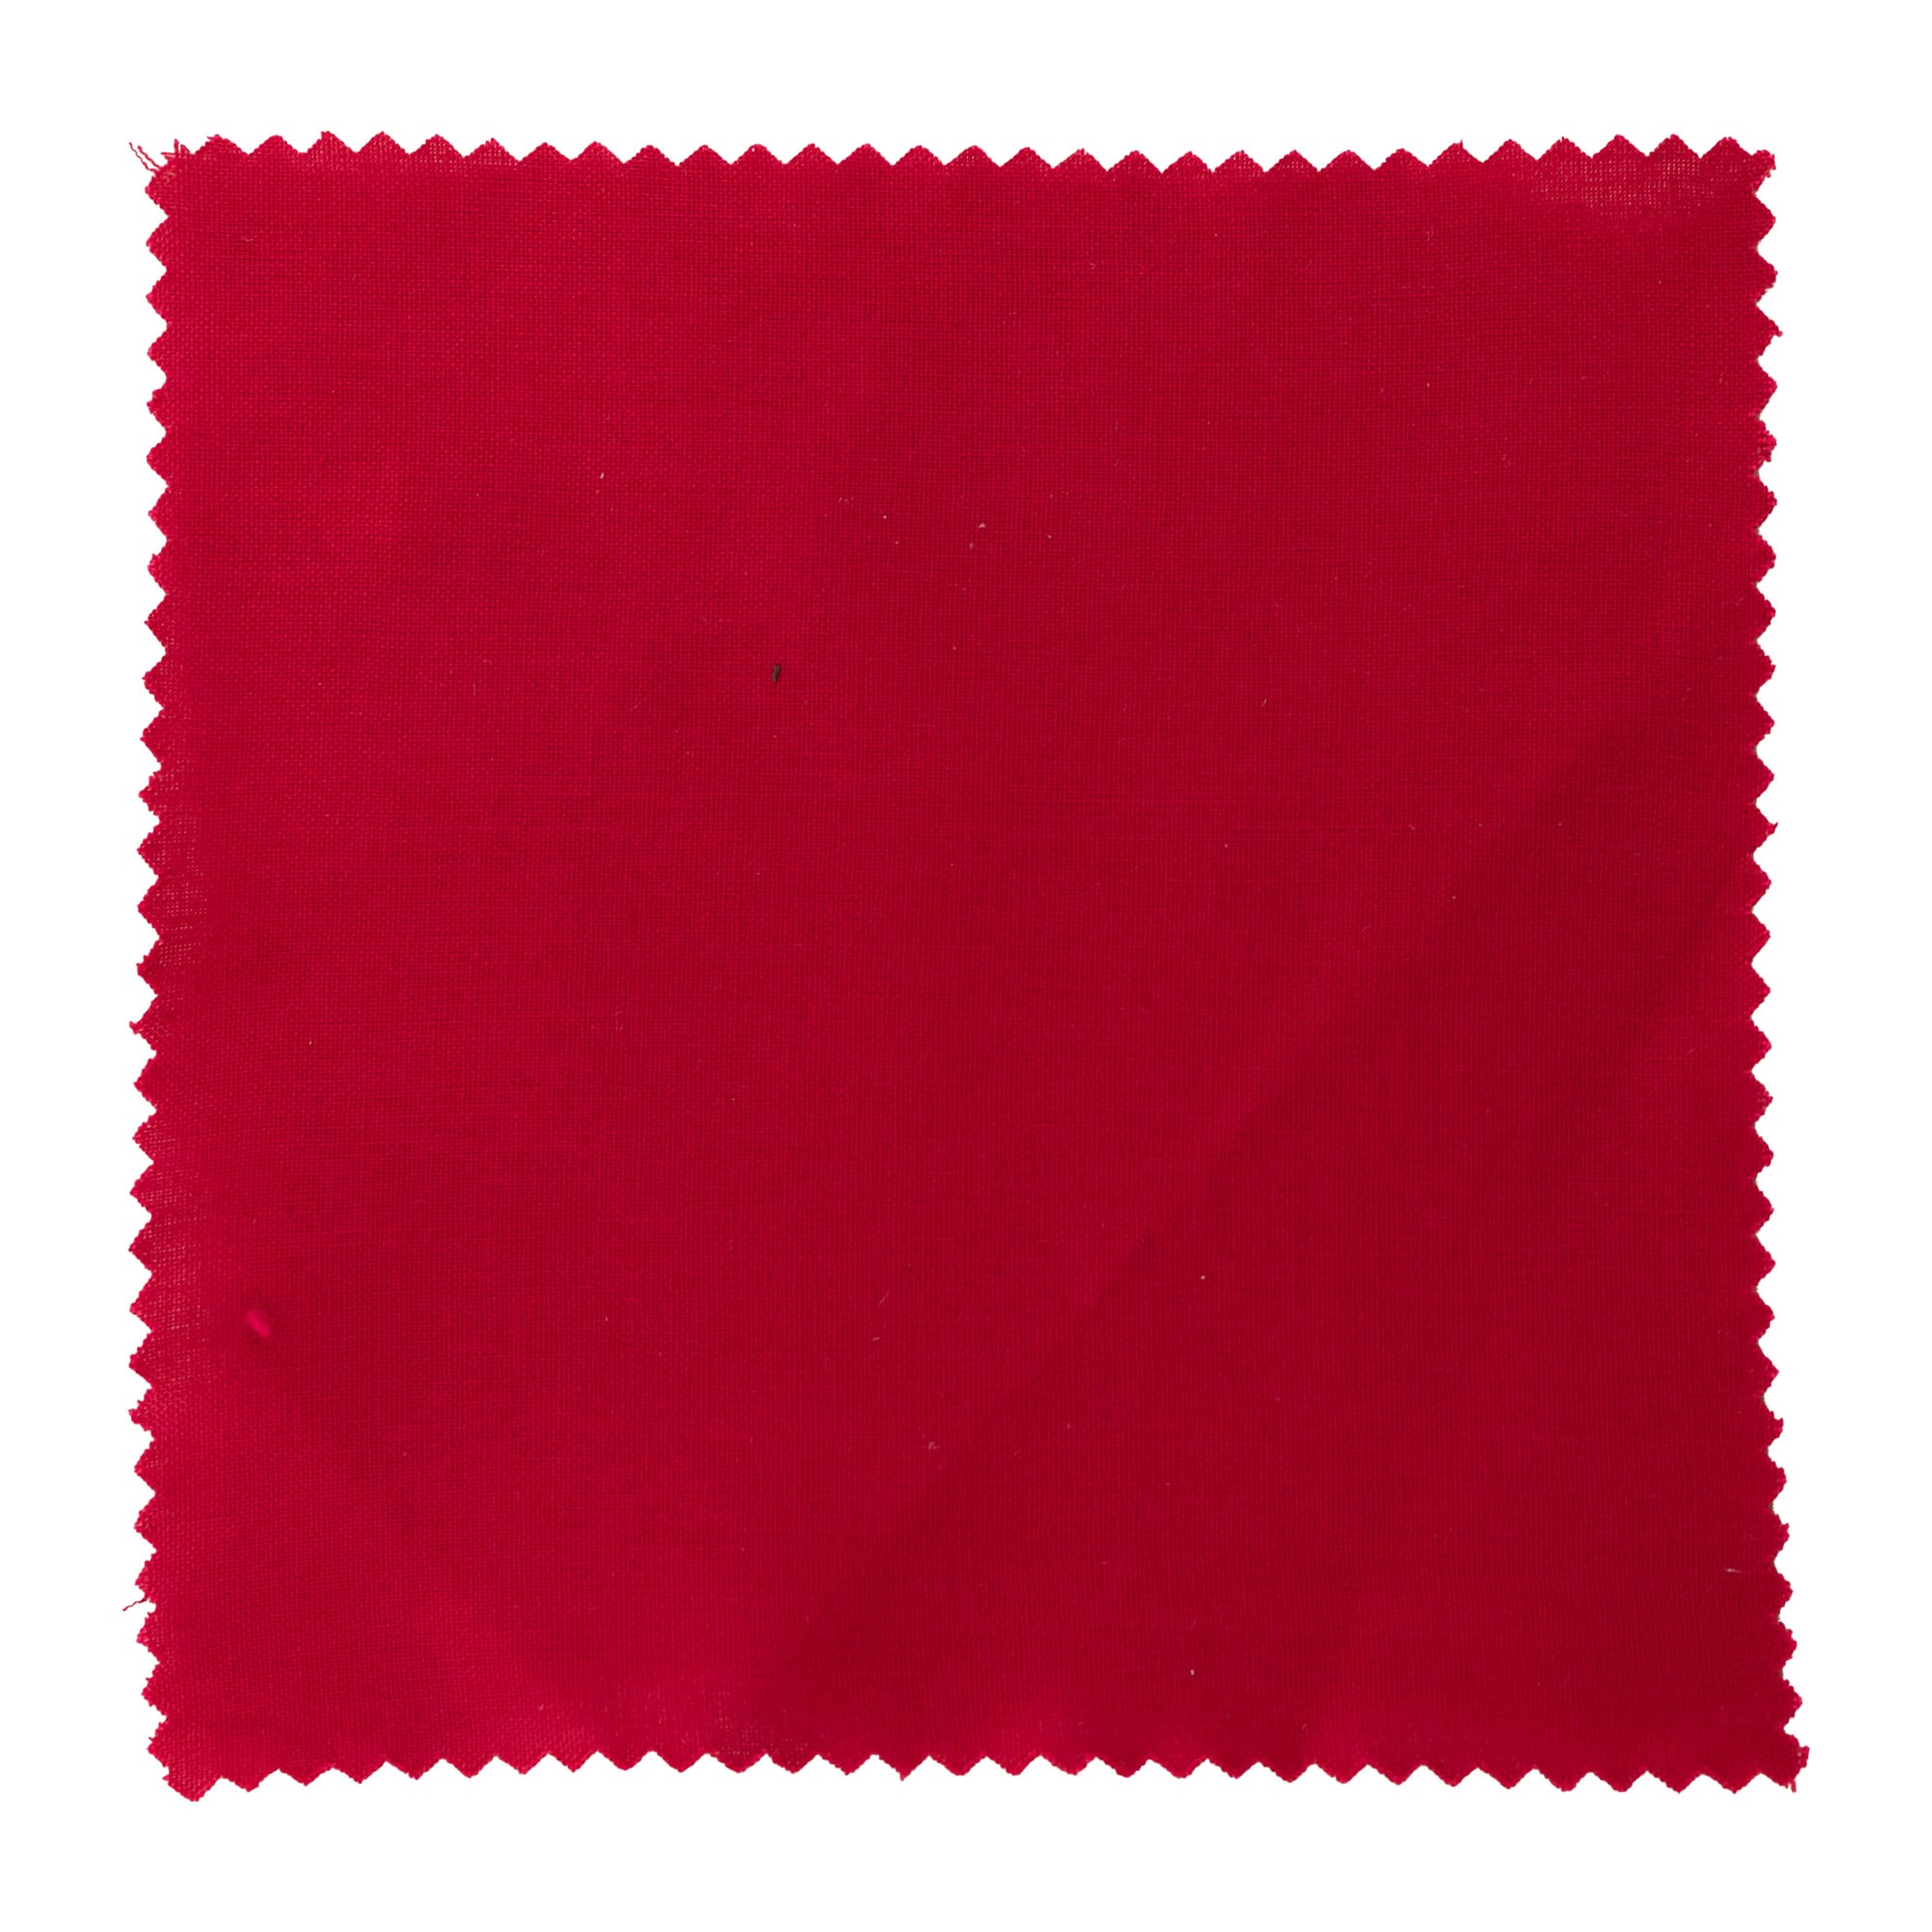 Kapturek na słoik 15x15, kwadratowy, materiał tekstylny, kolor czerwony, zamknięcie: TO58-TO82